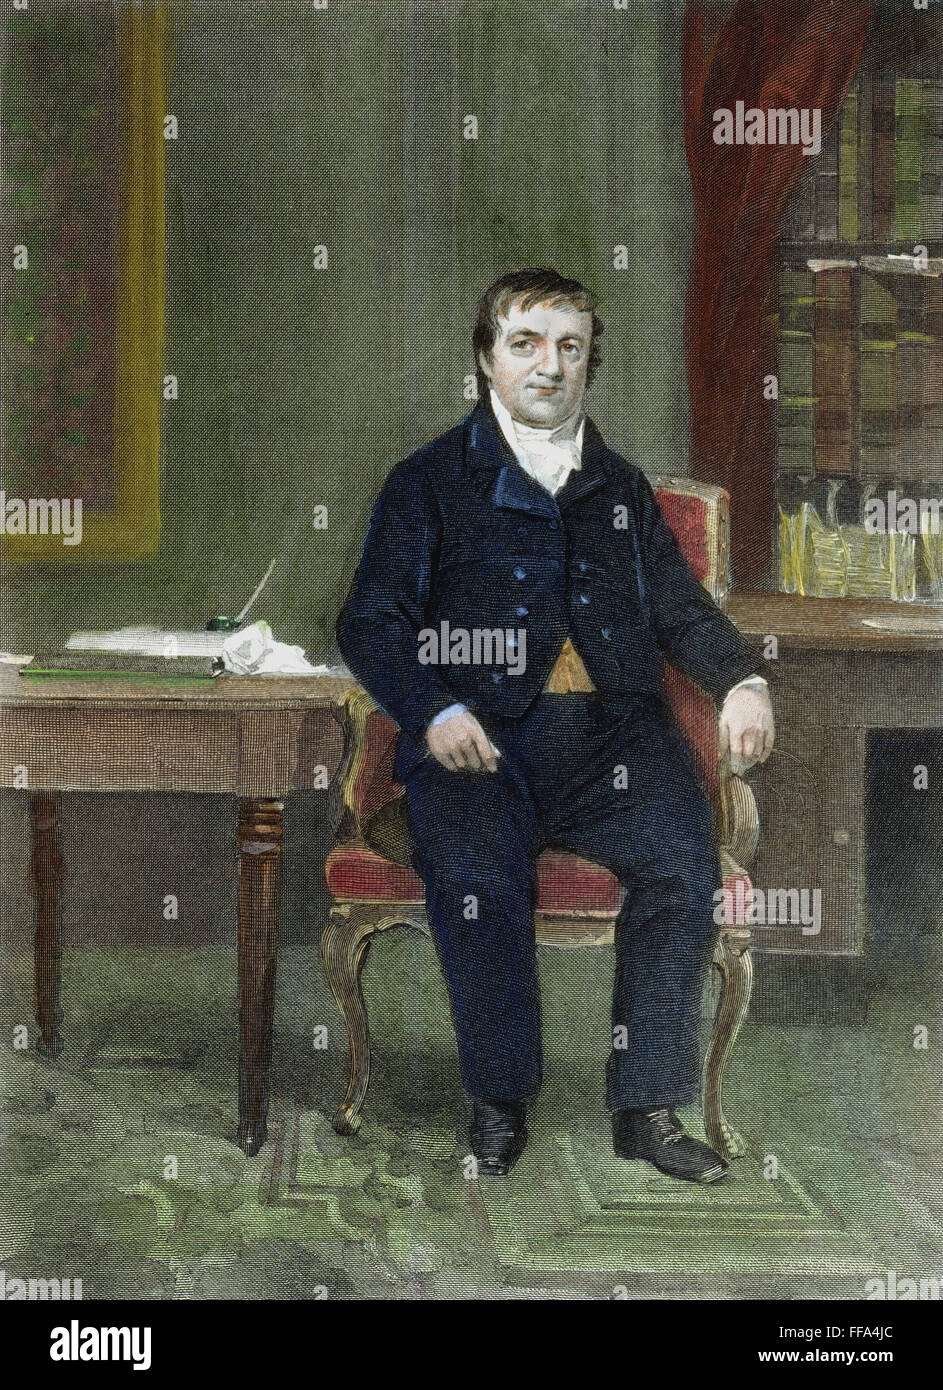 Astor /n(1763-1848). Amerikanischer Pelzhändler und Finanzier. Linie und stupfen Gravur, American, 19. Jahrhundert. Stockfoto